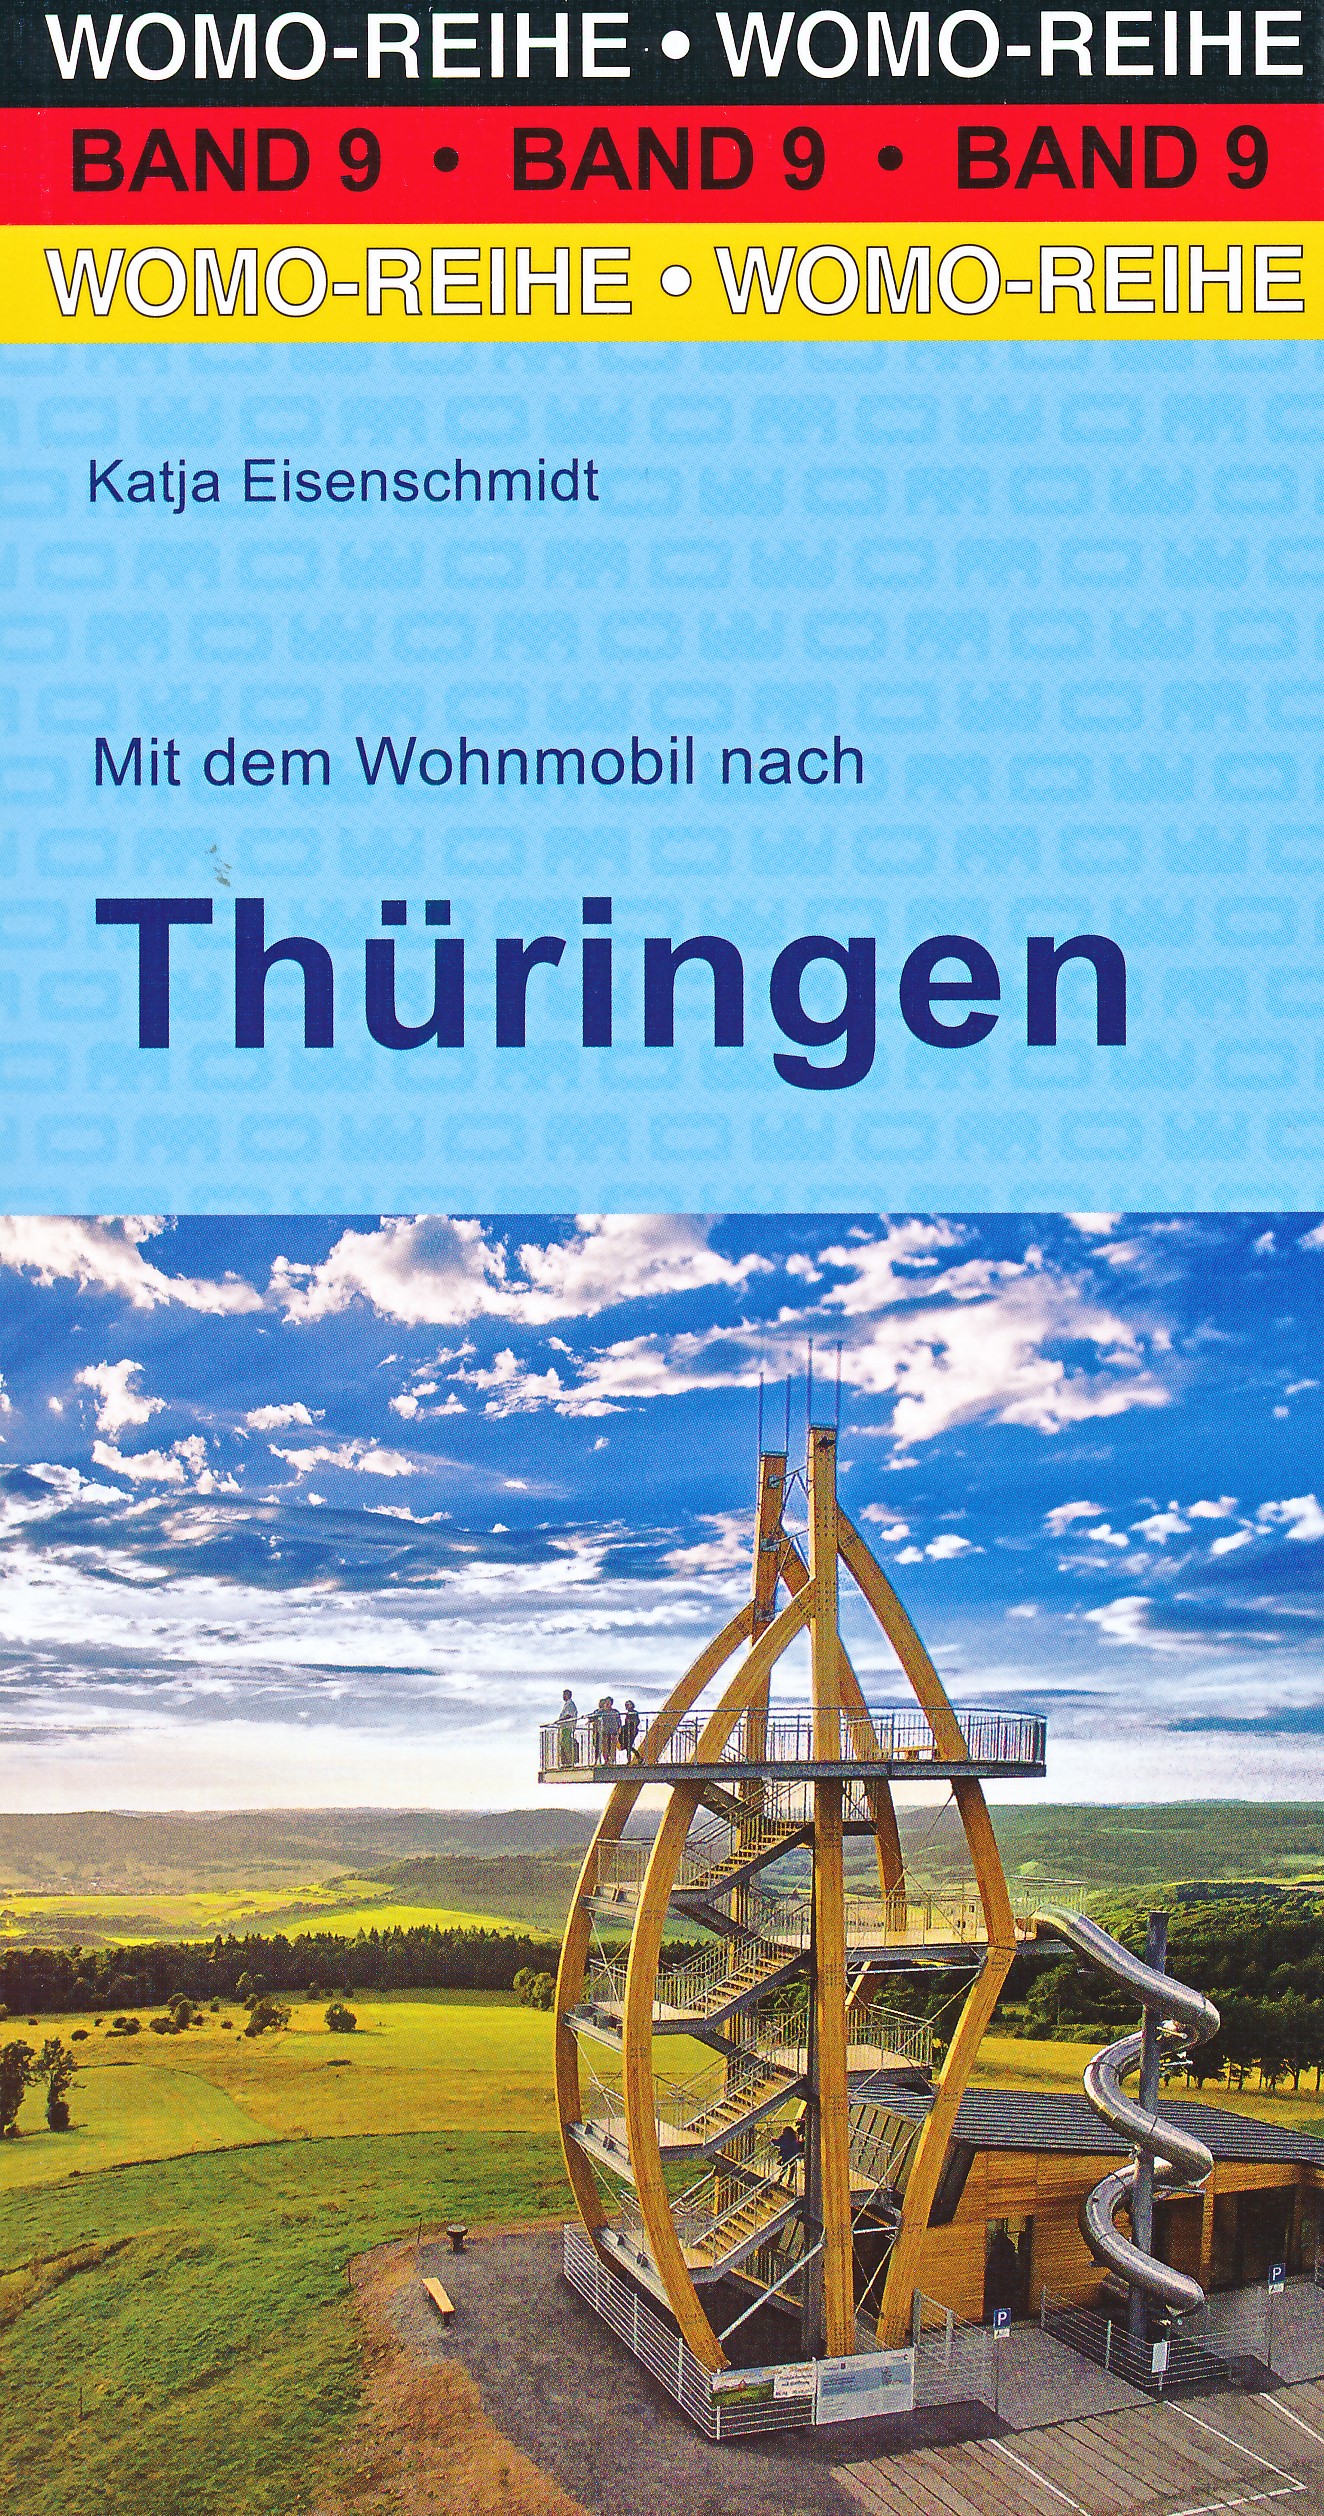 Online bestellen: Campergids 09 Mit dem Wohnmobil nach Thüringen | WOMO verlag